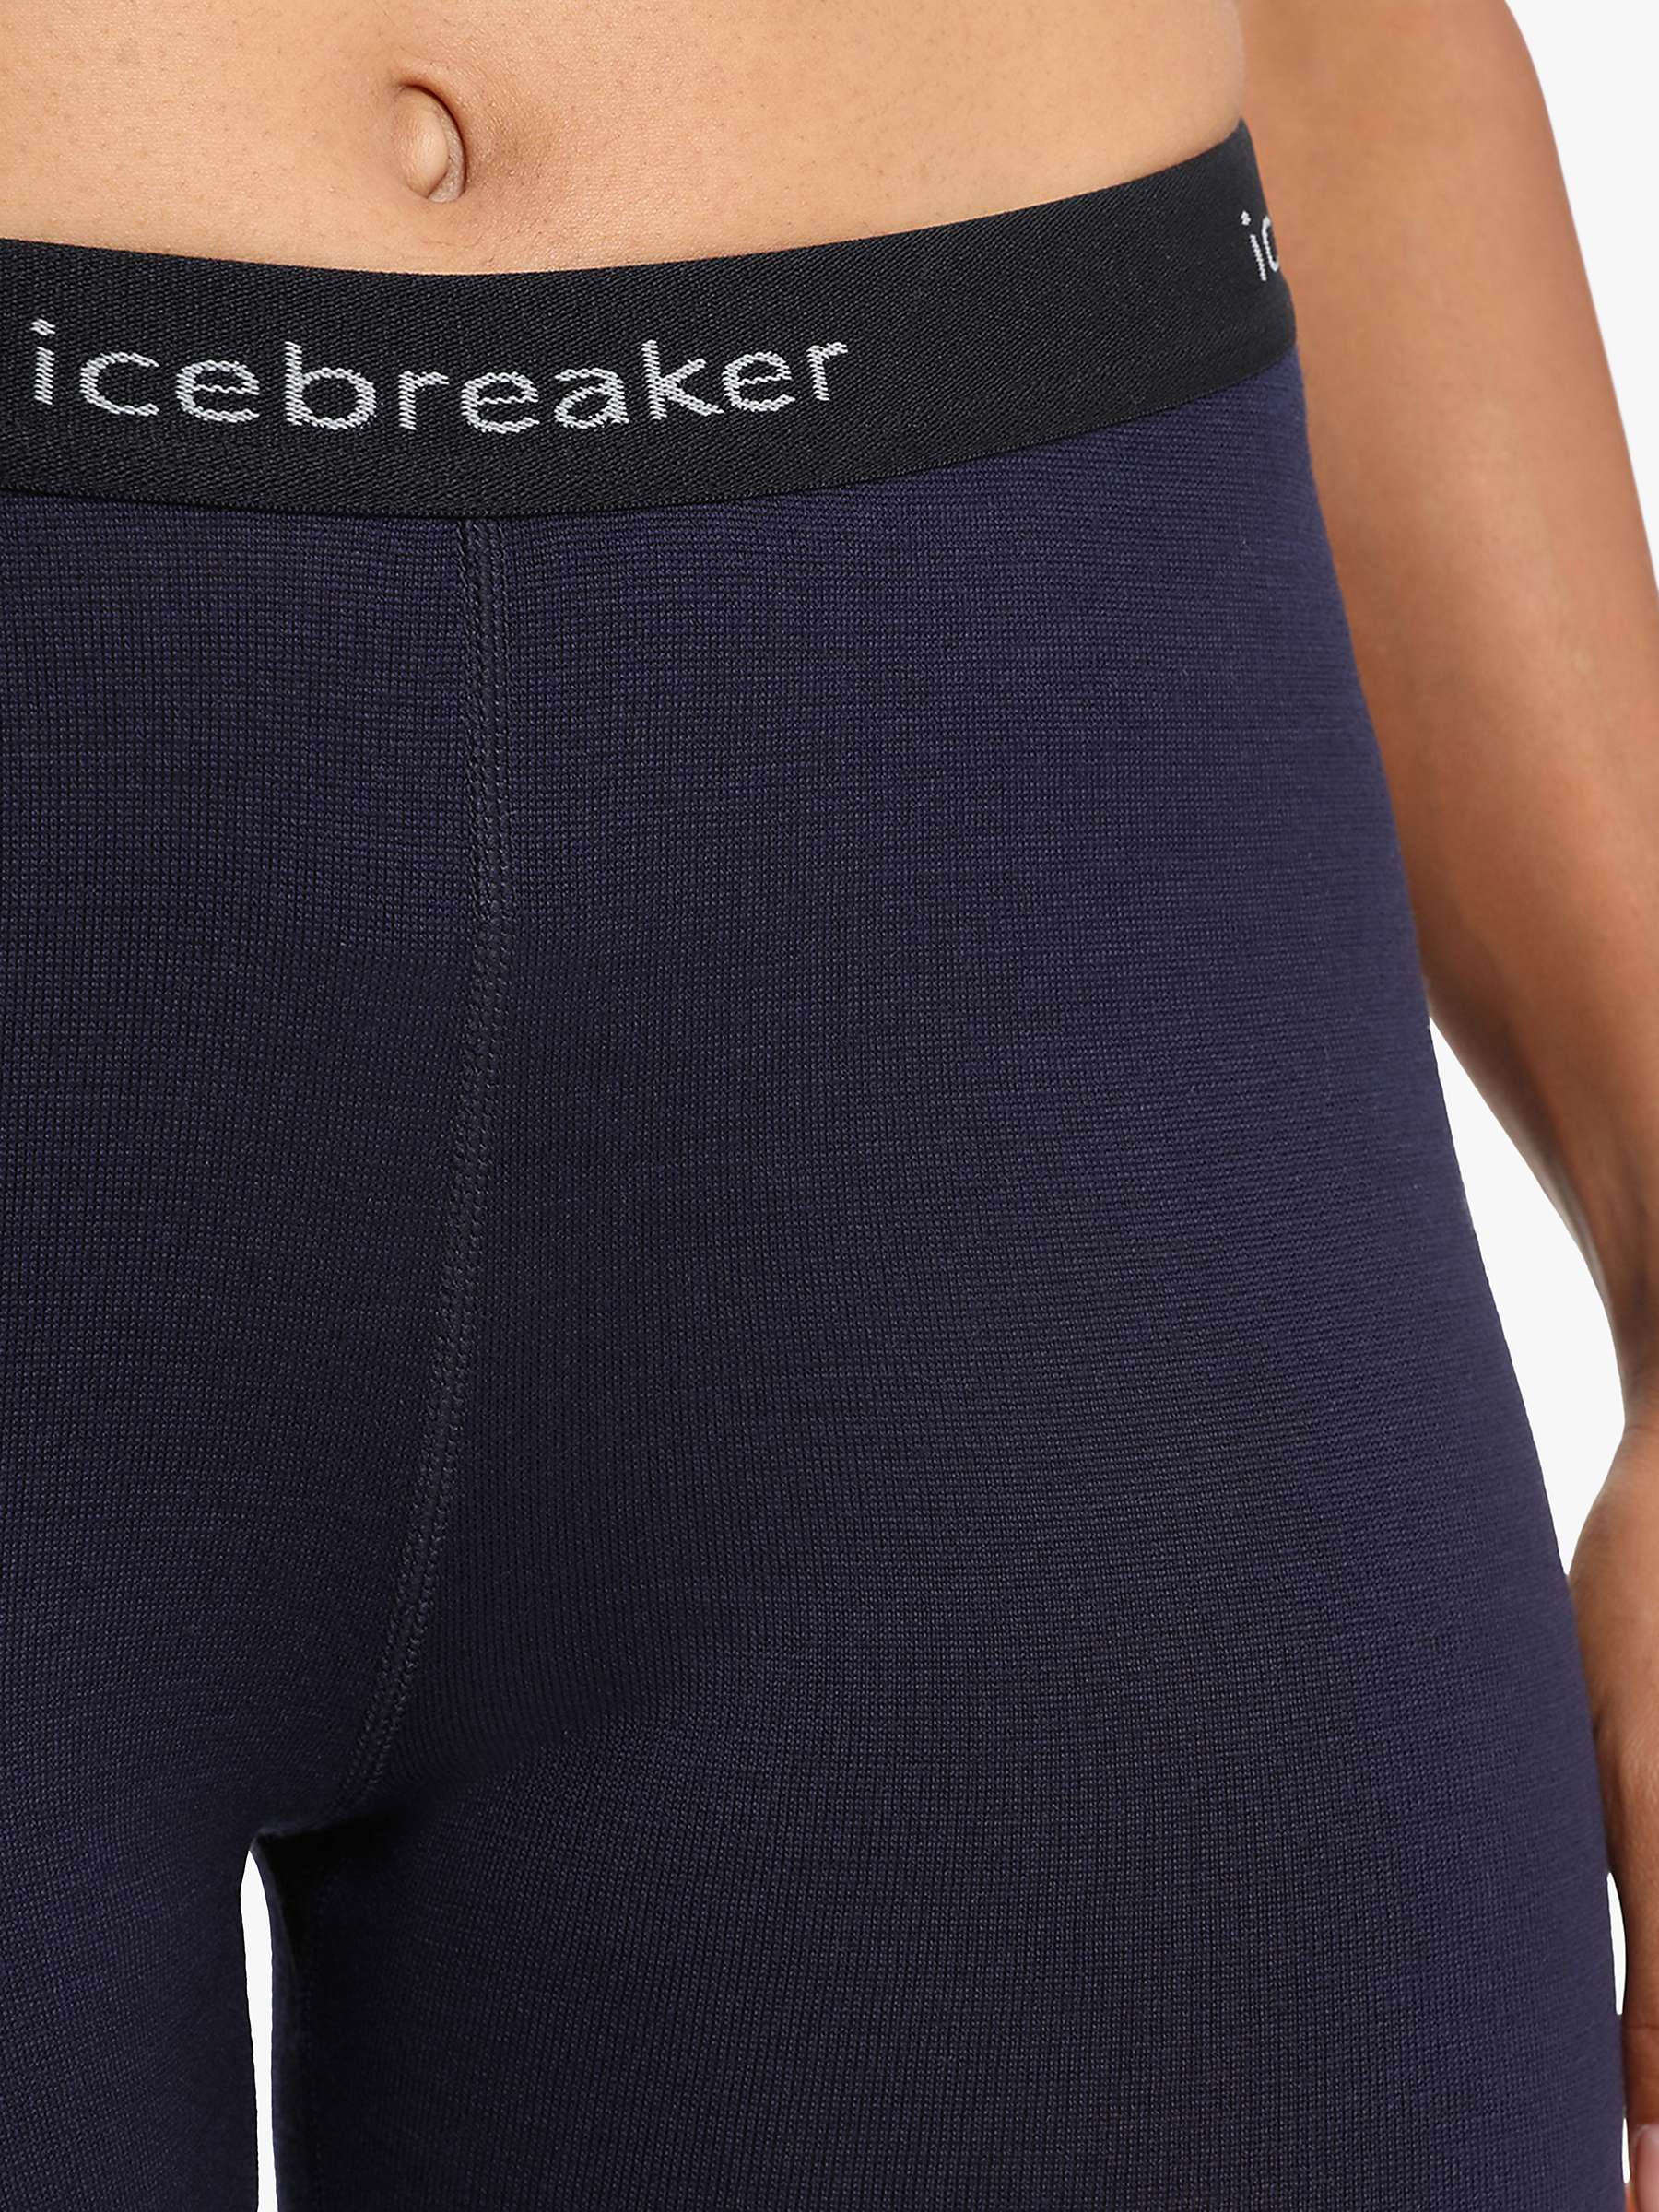 Buy Icebreaker Women's 260 Tech Merino Thermal Leggings Online at johnlewis.com